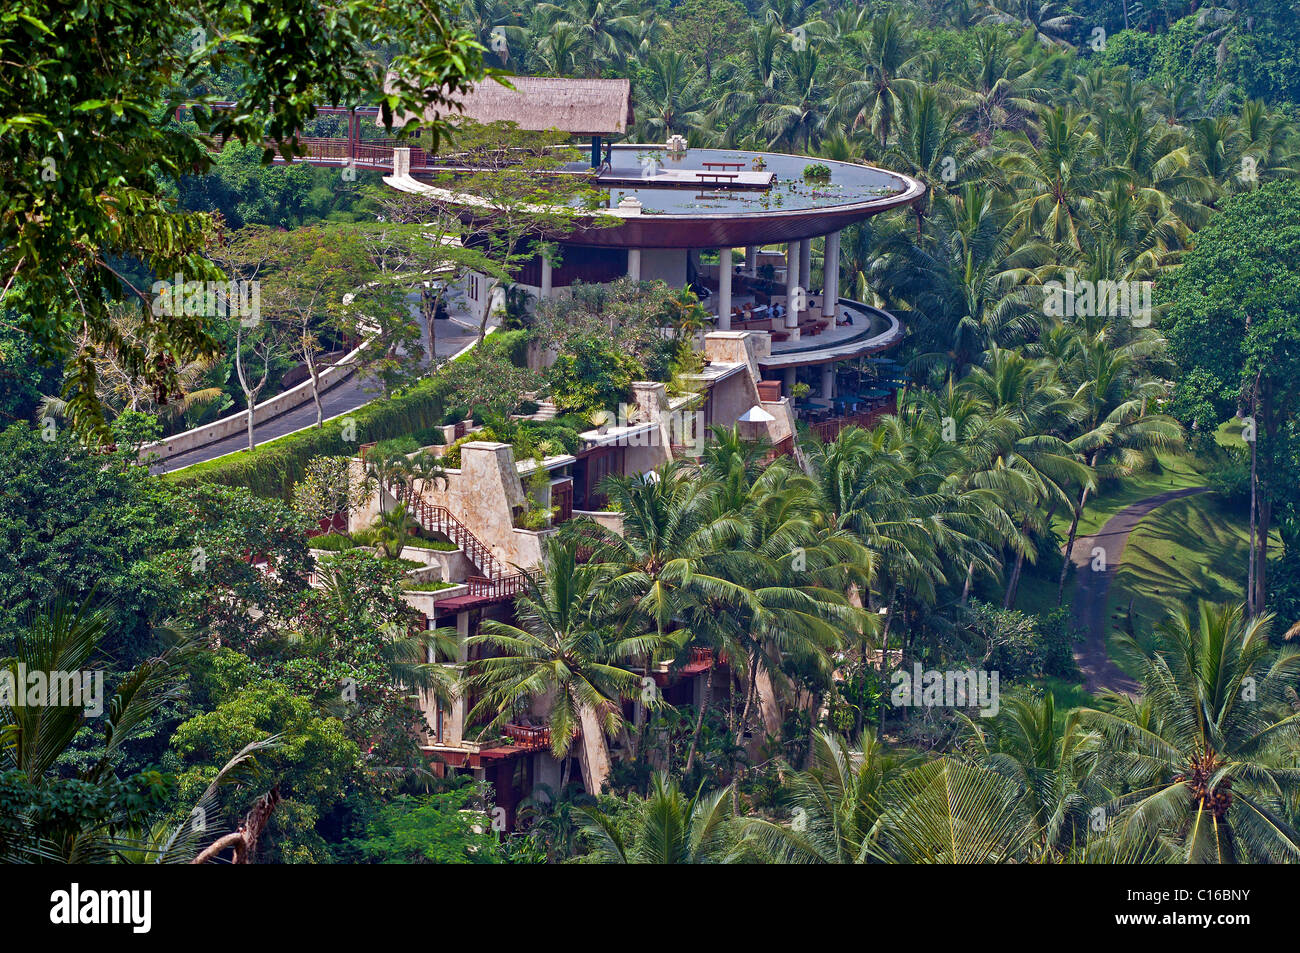 El Four Seasons Hotel ubicado entre los arrozales en Sayan, en Bali Foto de stock